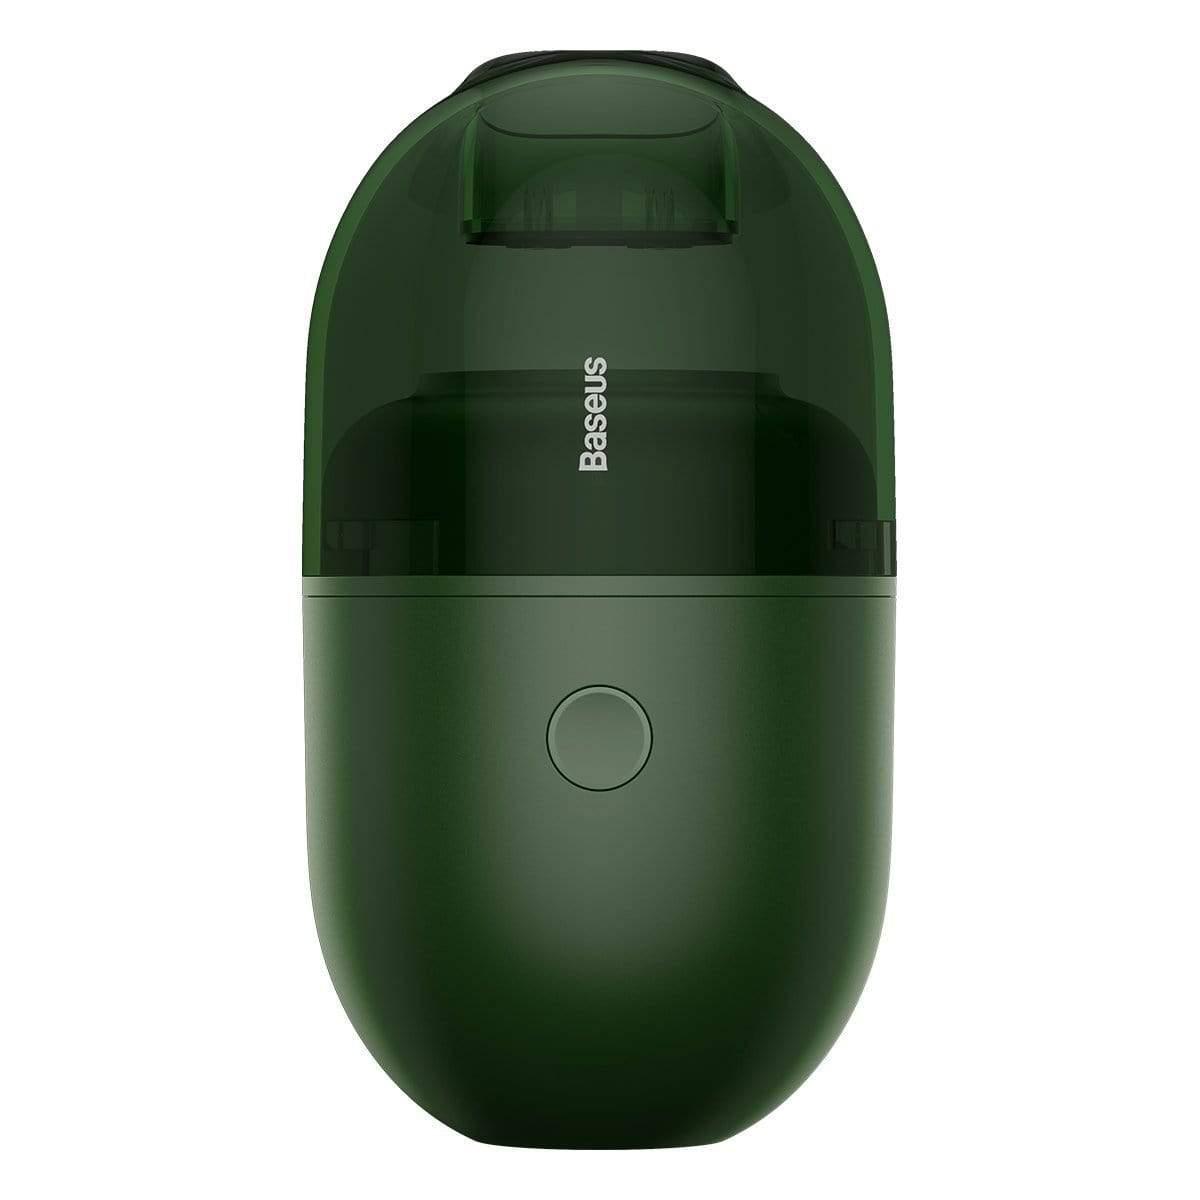 المكنسة الكهربائية الصغيرة Baseus C2 Desktop Capsule Vacuum Cleaner خضراء